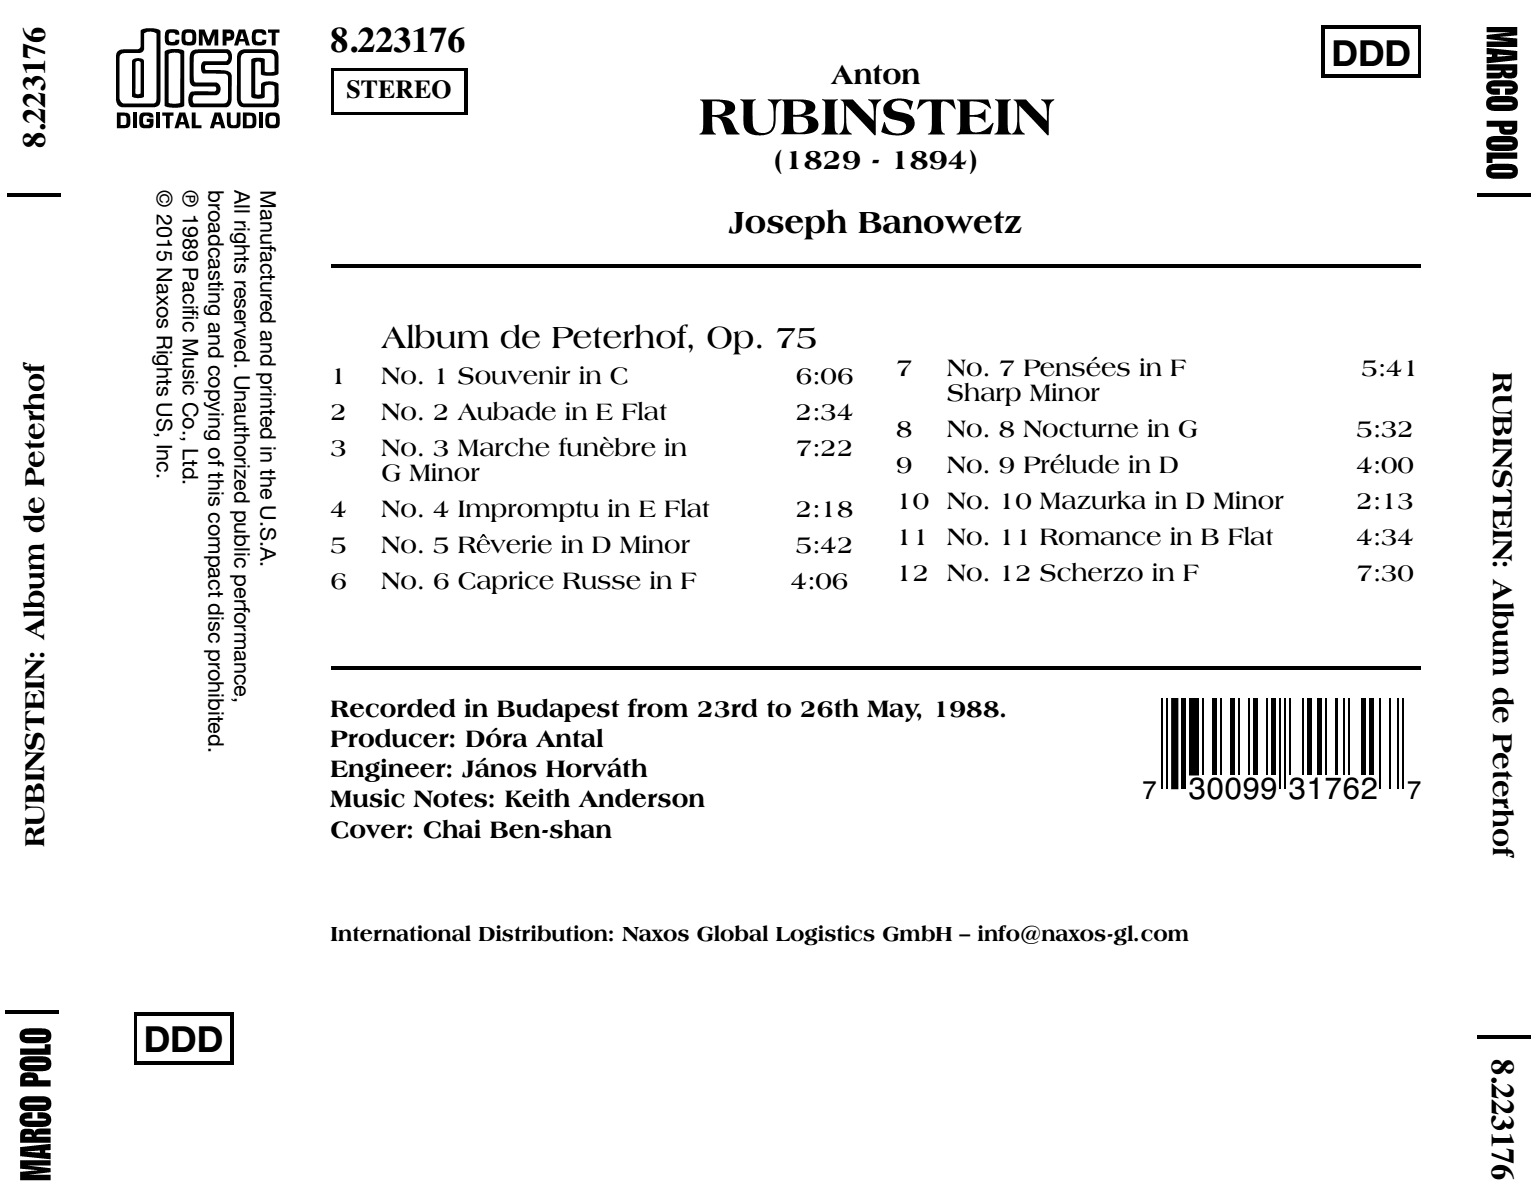 RUBINSTEIN; Album de Peterhof, Op. 75 - slide-1